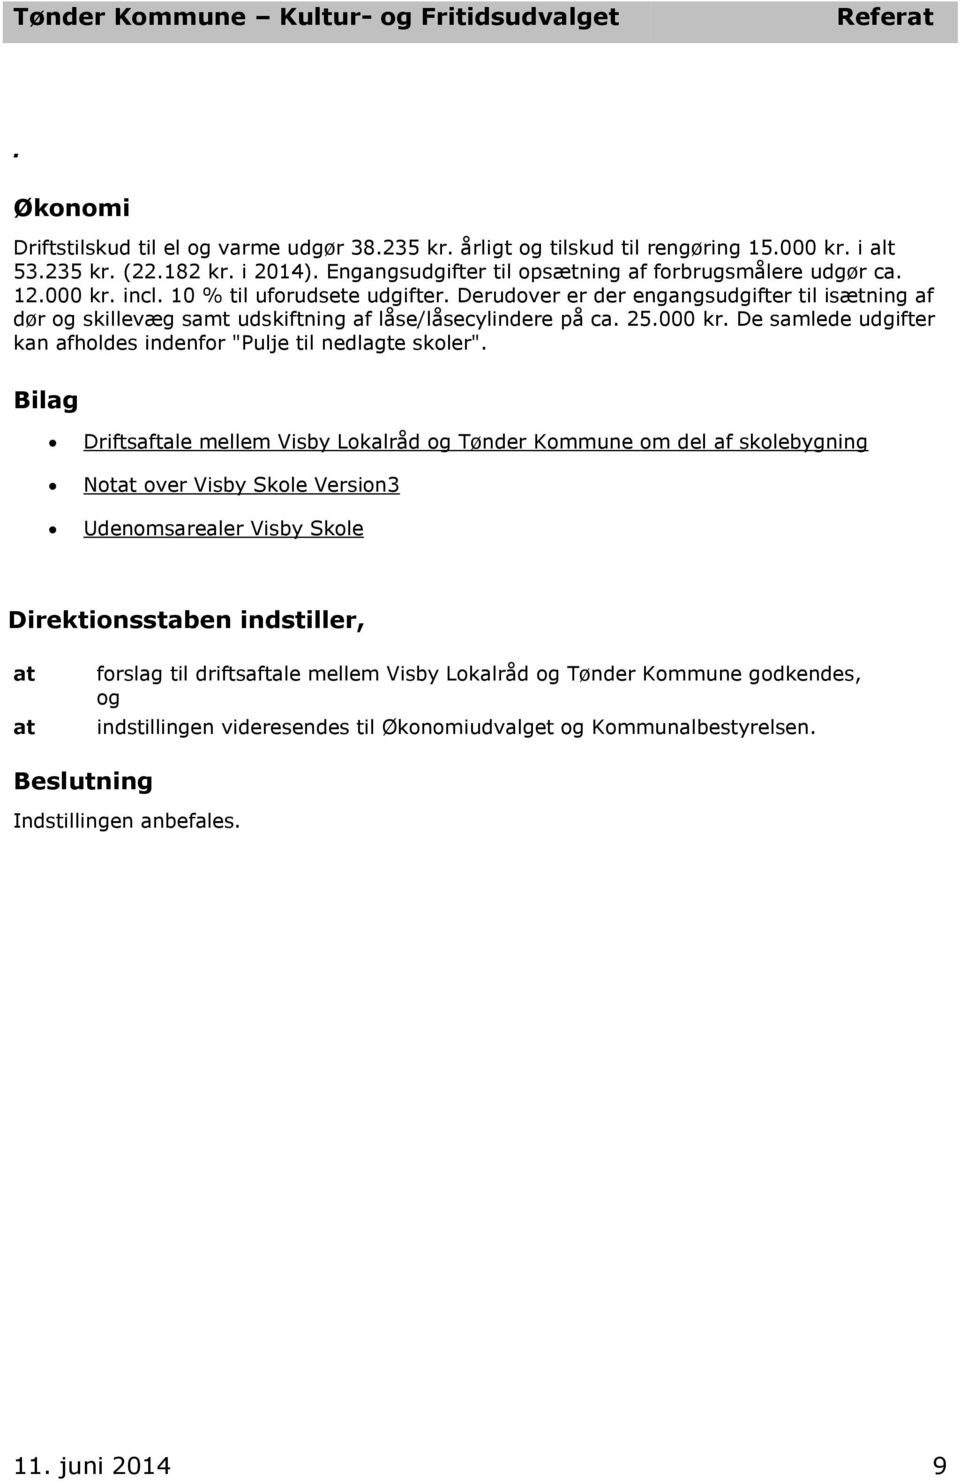 Driftsaftale mellem Visby Lokalråd og Tønder Kommune om del af skolebygning Not over Visby Skole Version3 Udenomsarealer Visby Skole Direktionsstaben indstiller, forslag til driftsaftale mellem